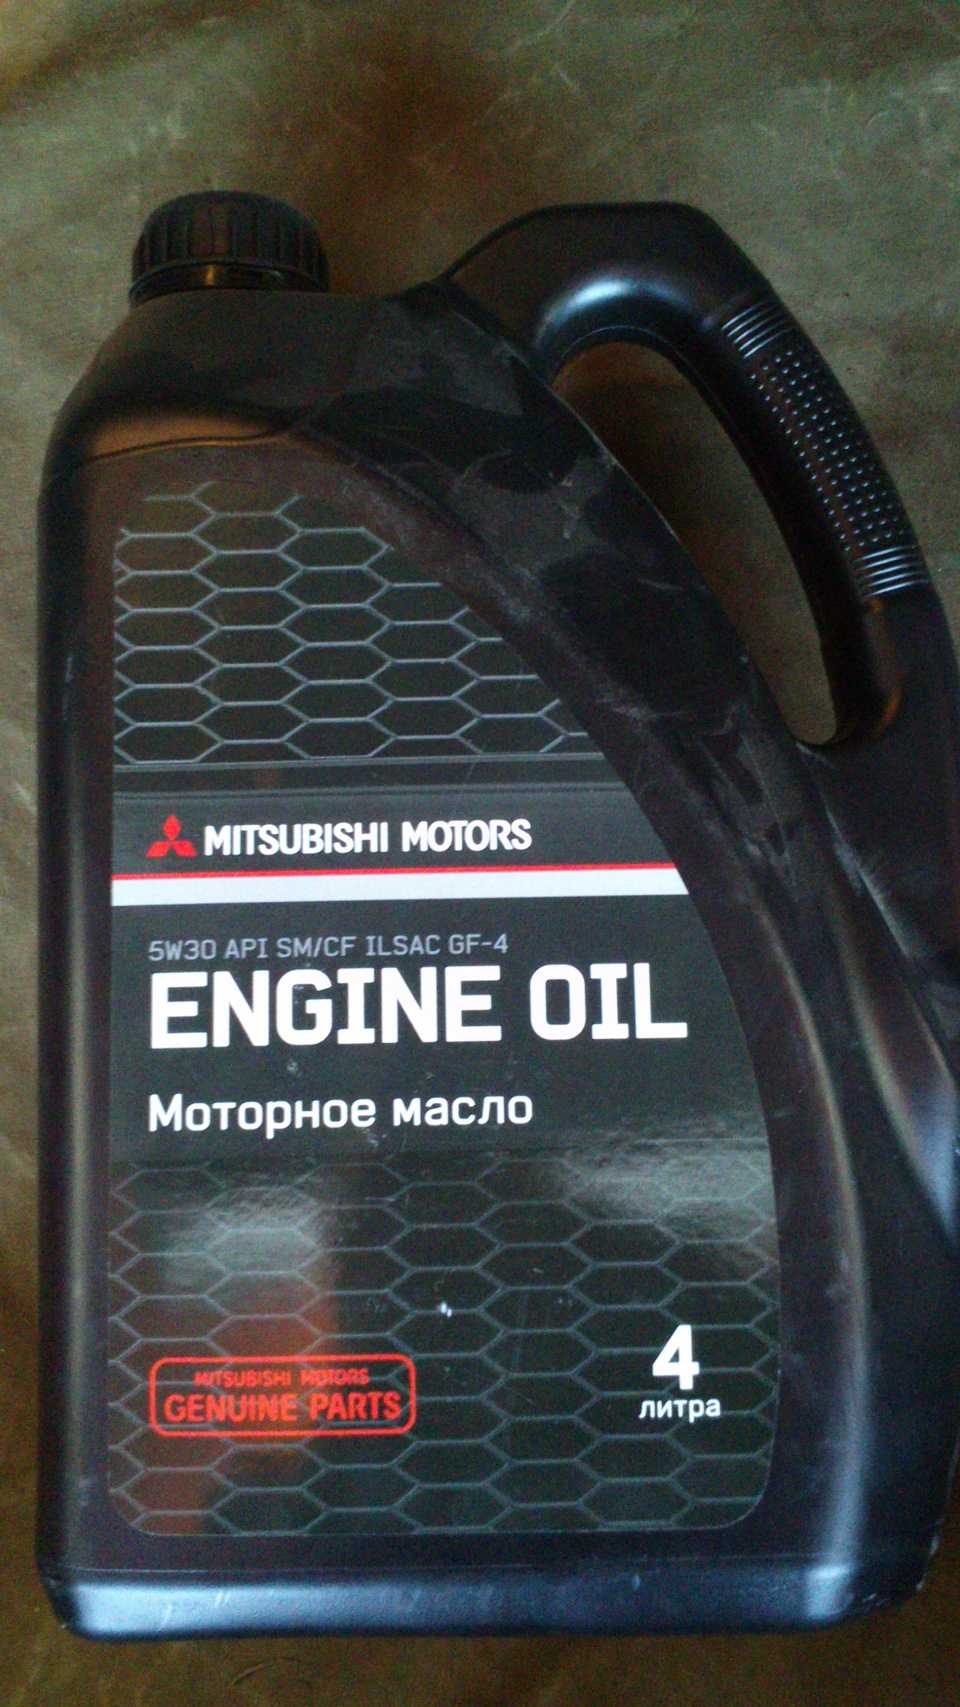 Как заменить моторное масло в двигателе mitsubishi lancer x